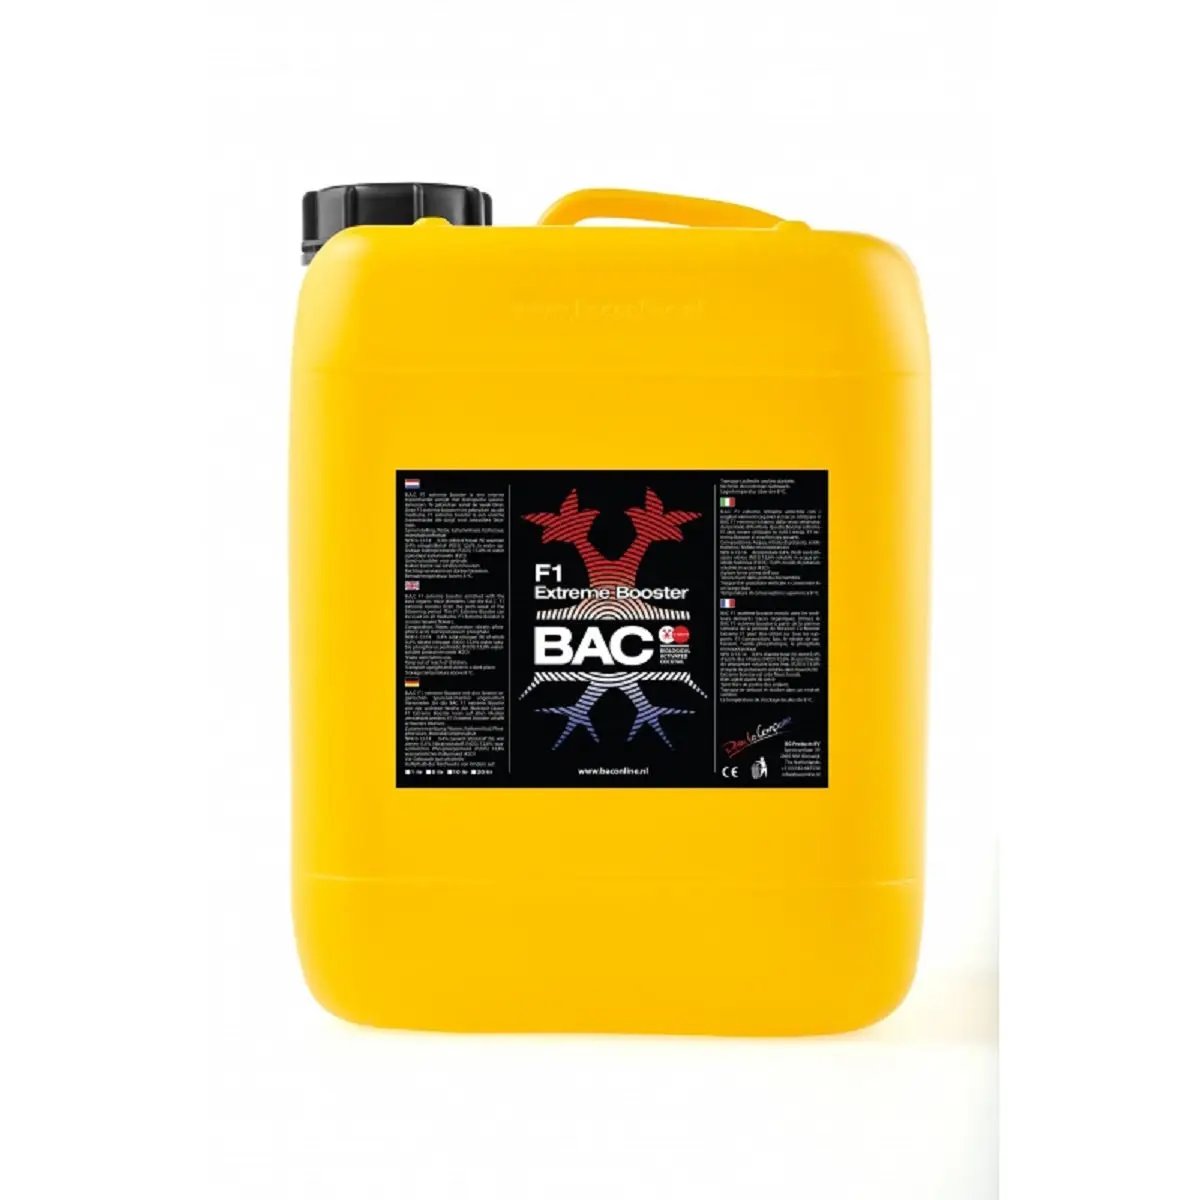 Engrais BAC F1 Extreme Booster 20 litres au potassium et phosphore